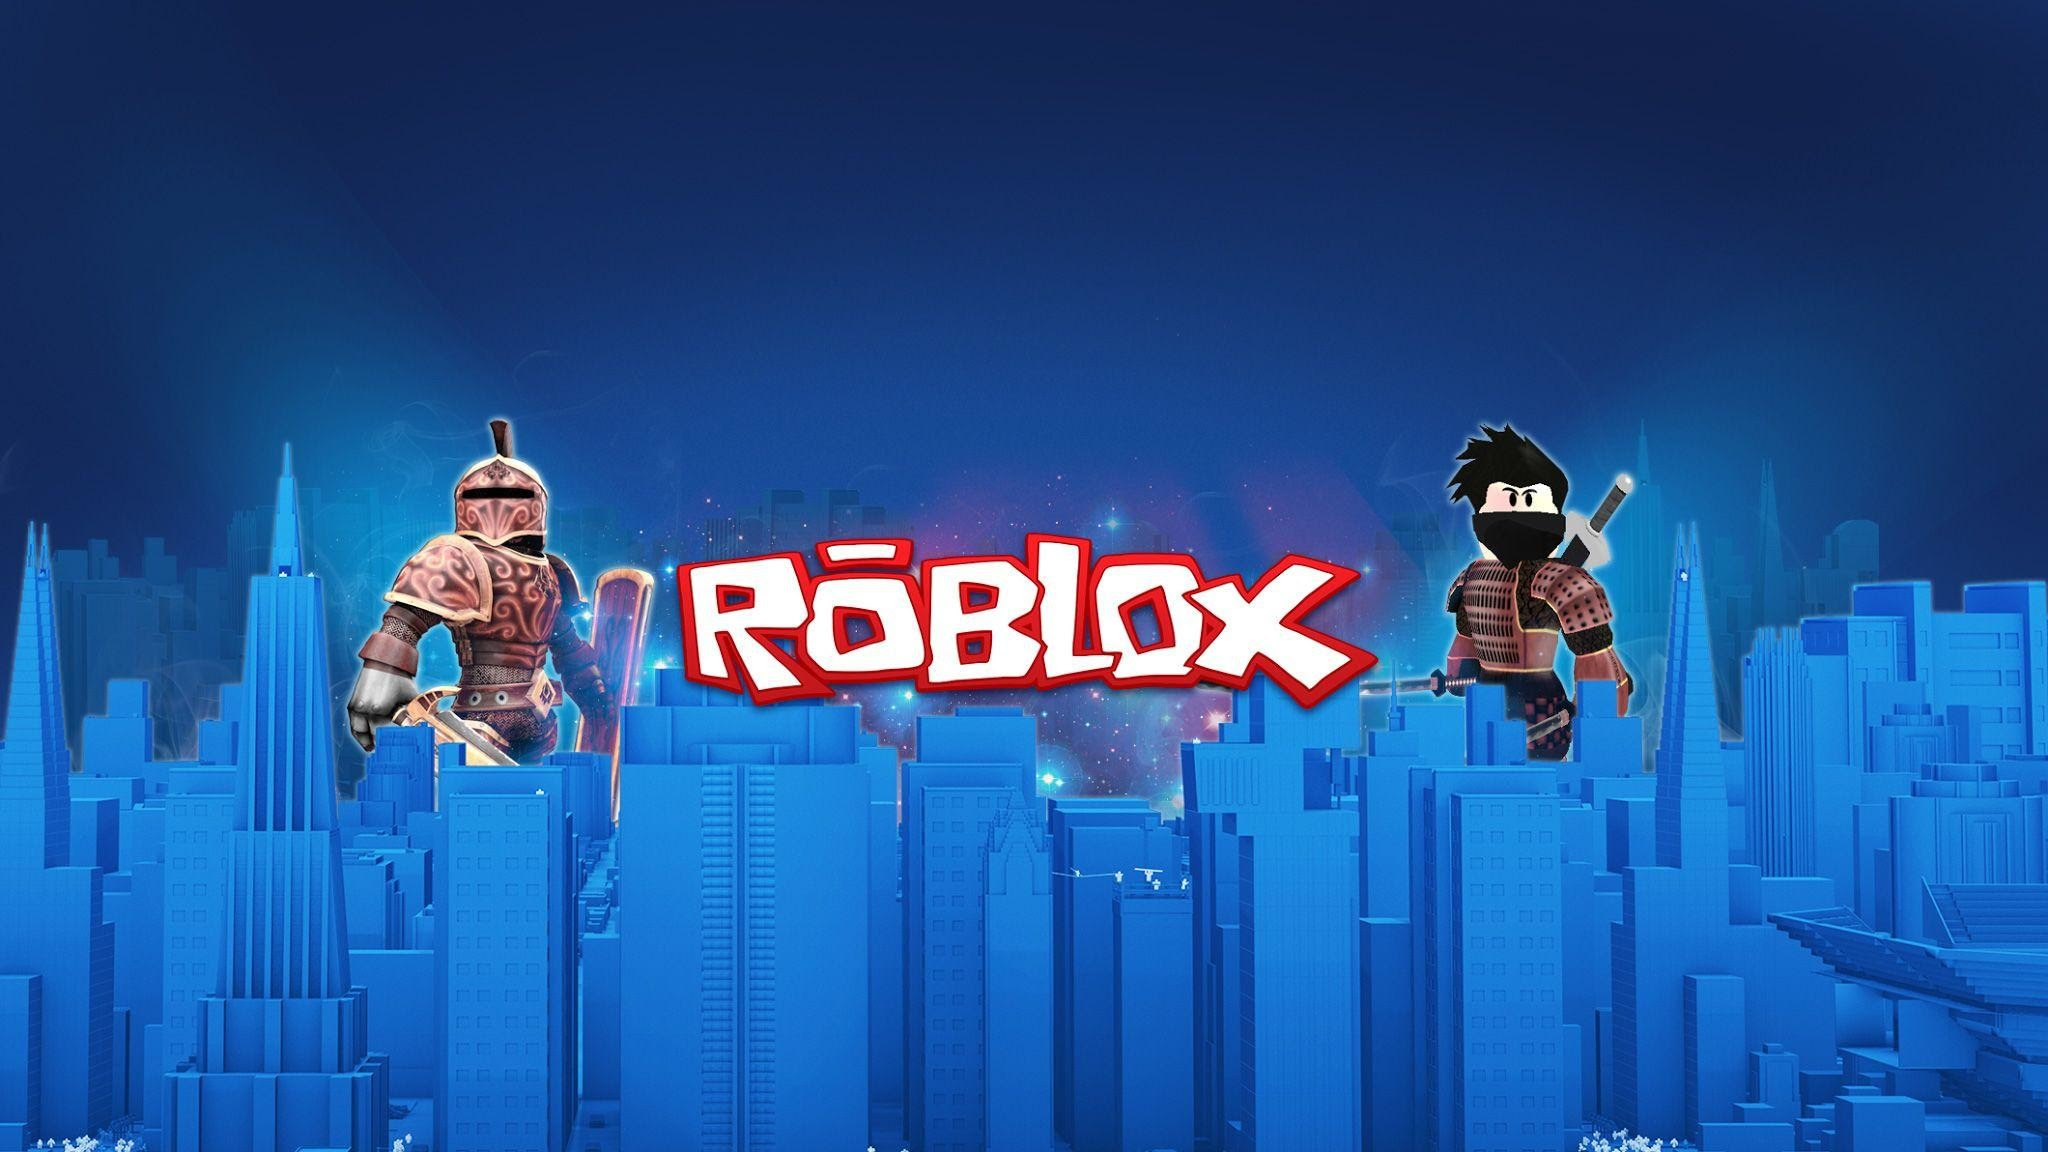 Supreme Supreme Roblox T Shirt Free Wallpaper New Free Item Release Roblox Promo Codes 2019 - for roblox forzambiconsultingltdcom